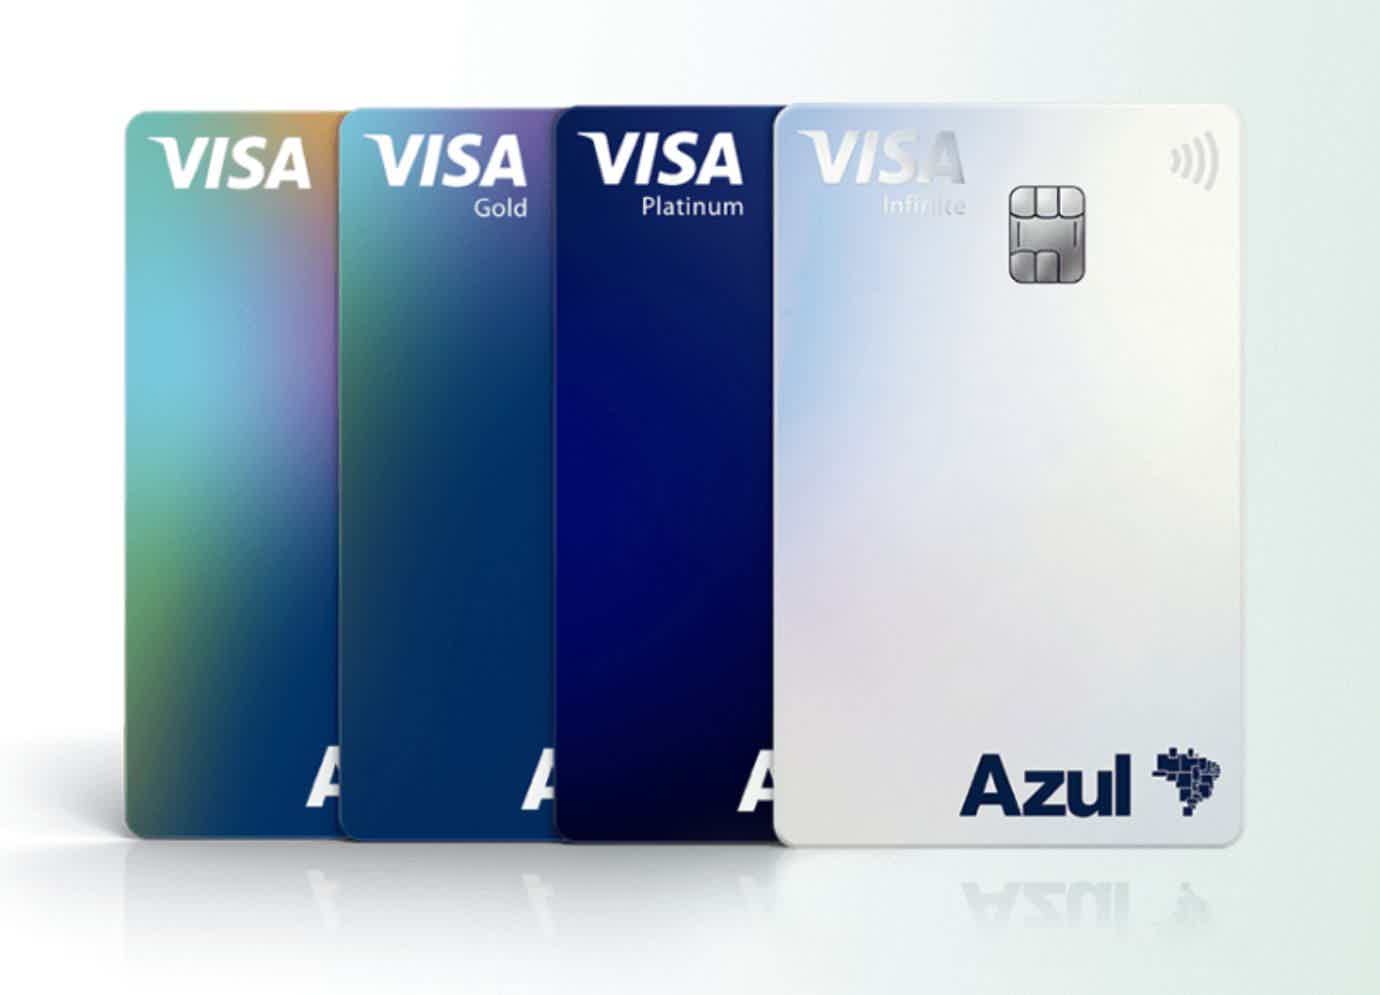 Imagem mostrando quatro cartões de crédito em tons diferentes de azul e um prateado